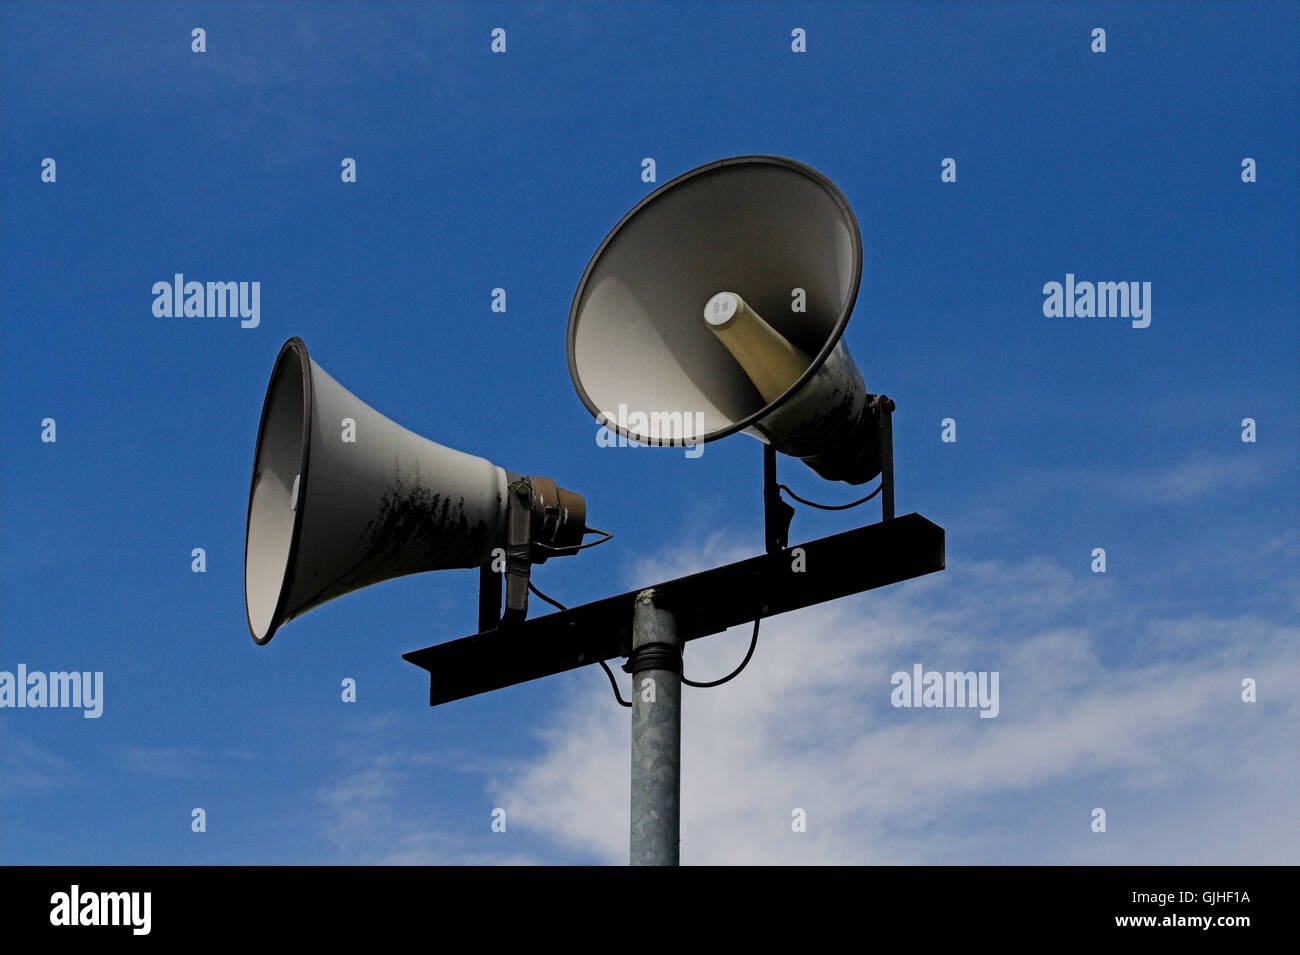 Sirene Alarm Lautsprecher Stockfotografie - Alamy